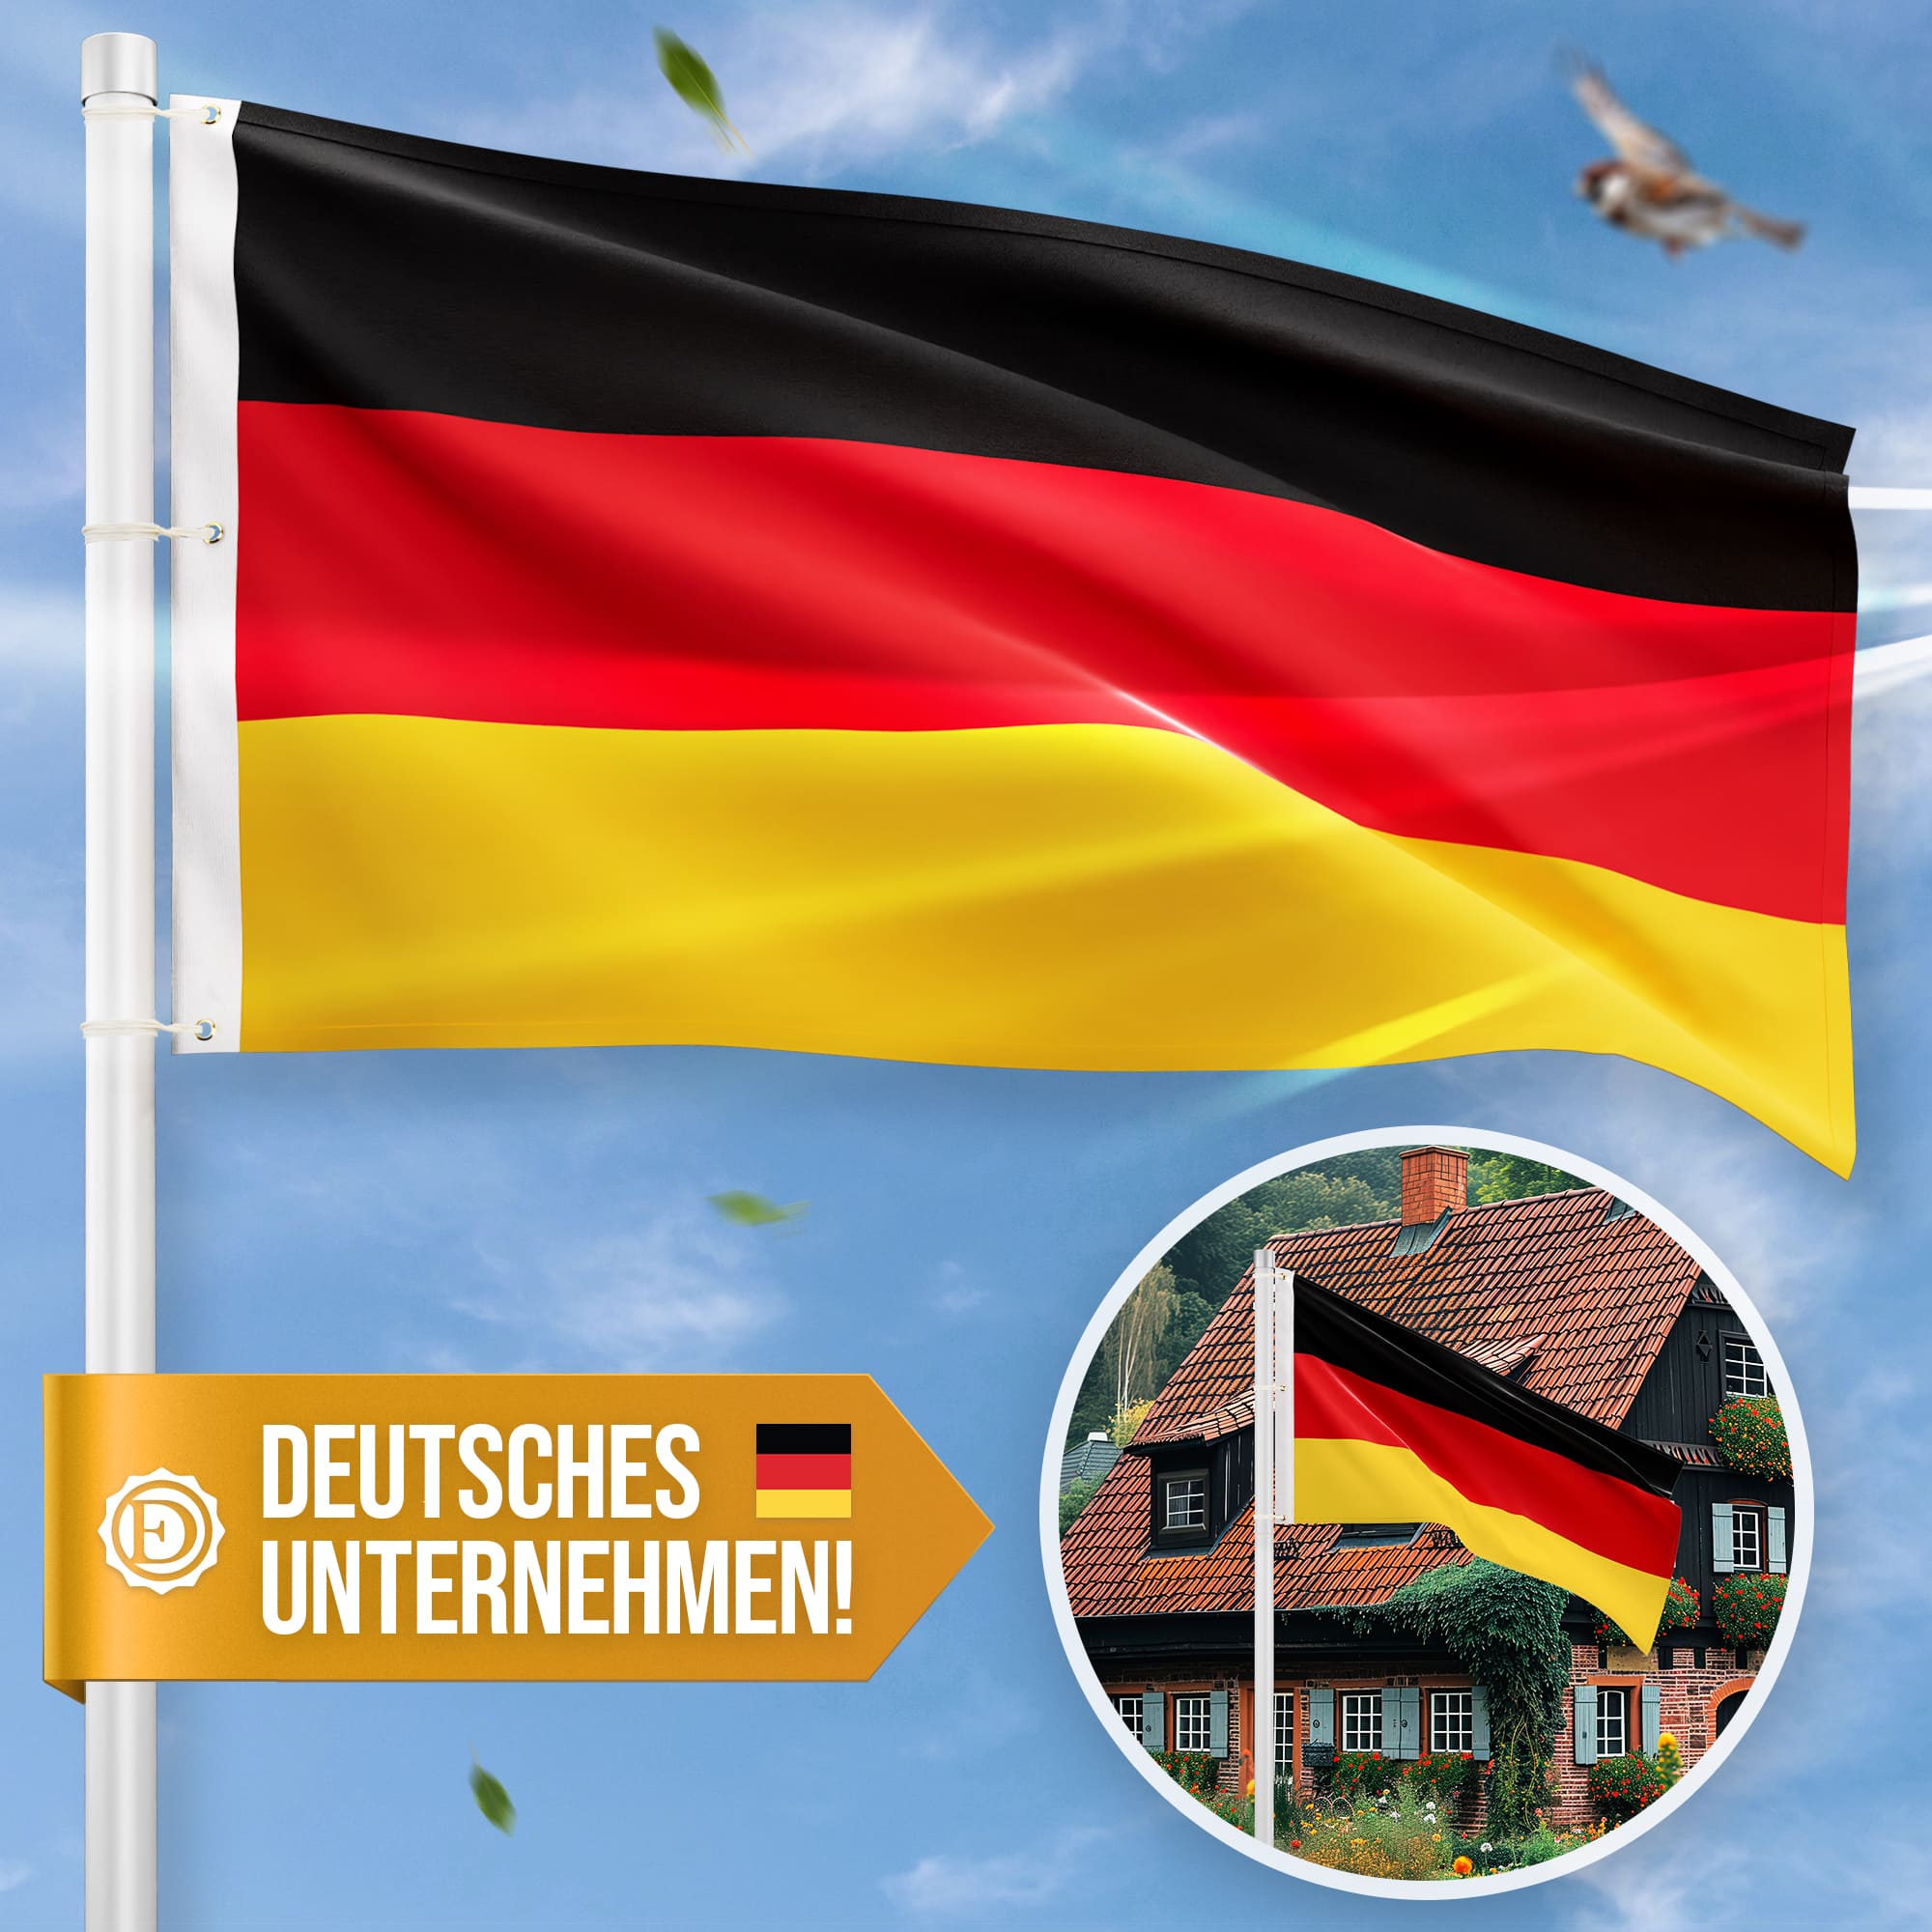 Deutschlandflagge - Hissfahne quer